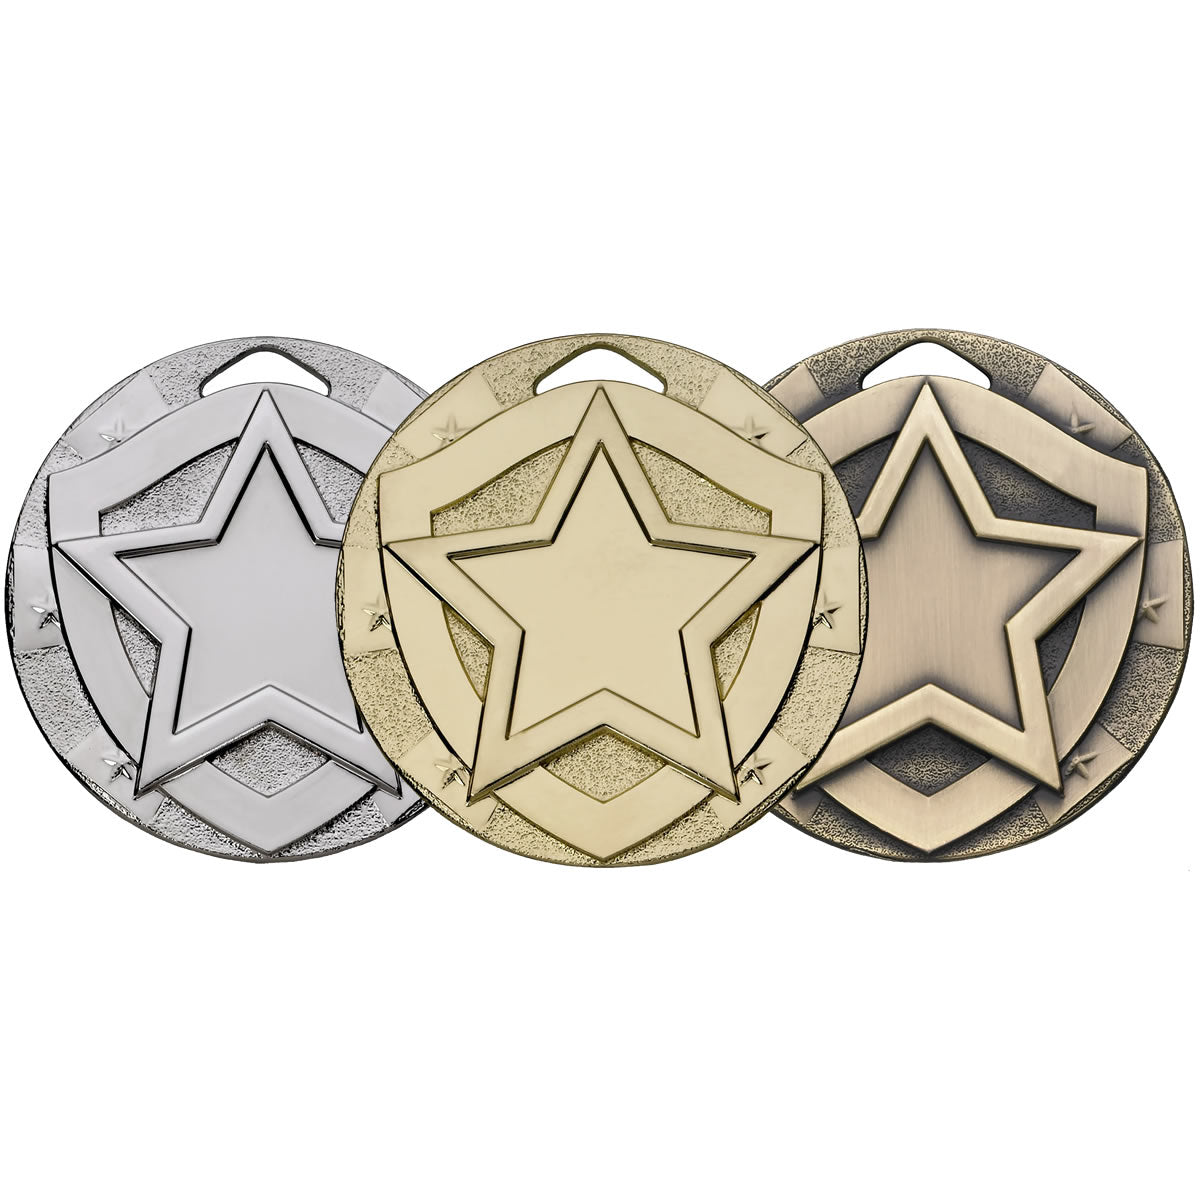 Star Mini Shield Medal - 50mm